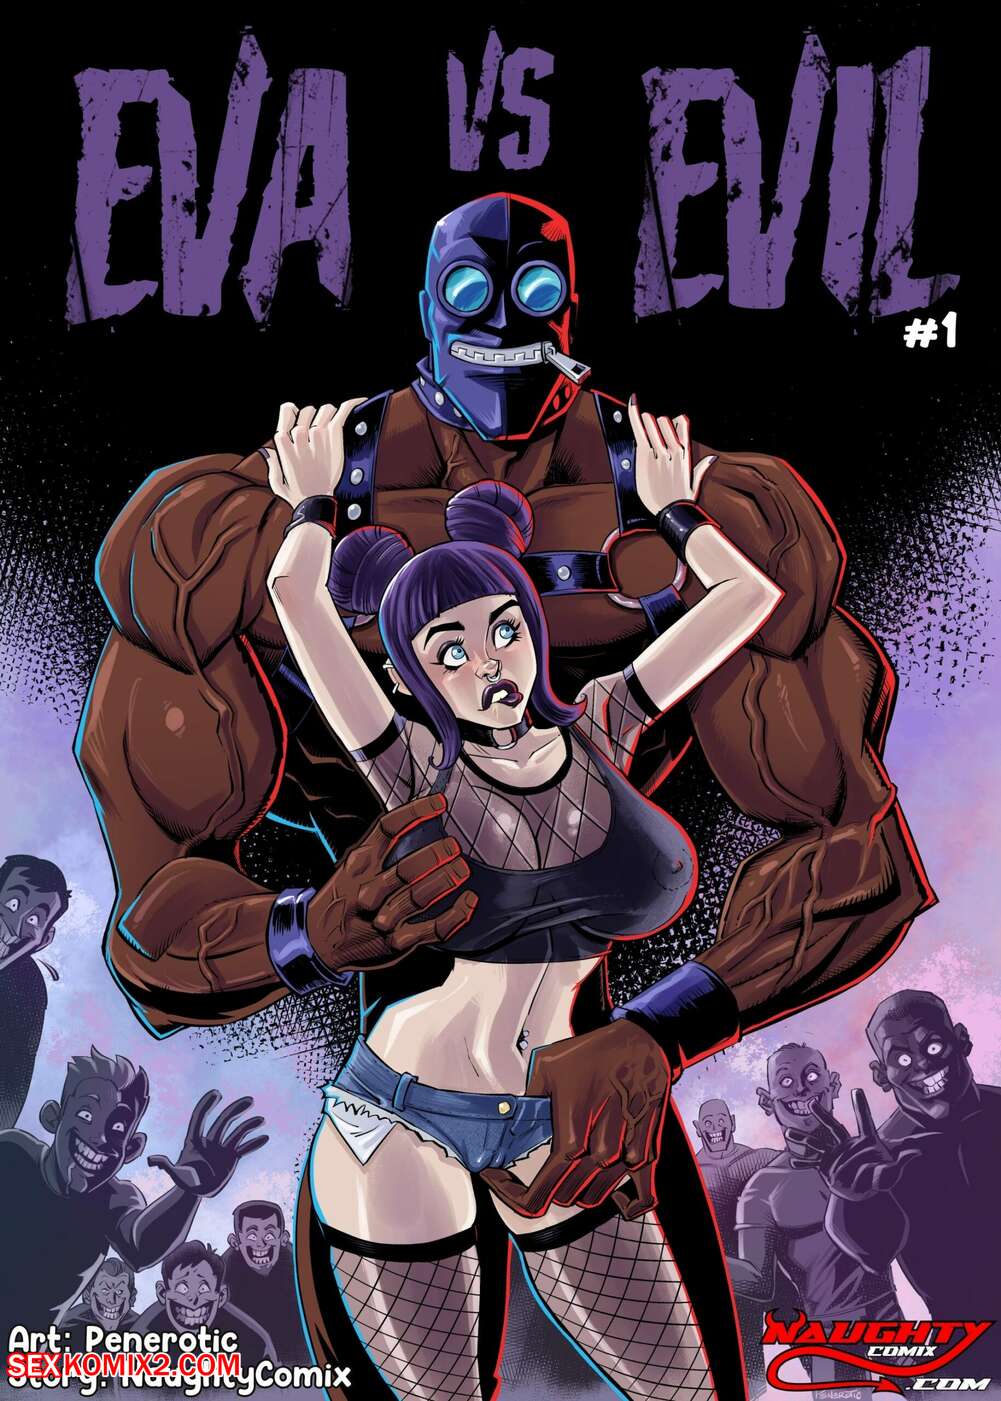 Hot Busty Porn Comic - âœ…ï¸ Porn comic Eva Vs. Evil. Naughtycomix Sex comic hot busty brunette âœ…ï¸ |  | Porn comics hentai adult only | wporncomics.com